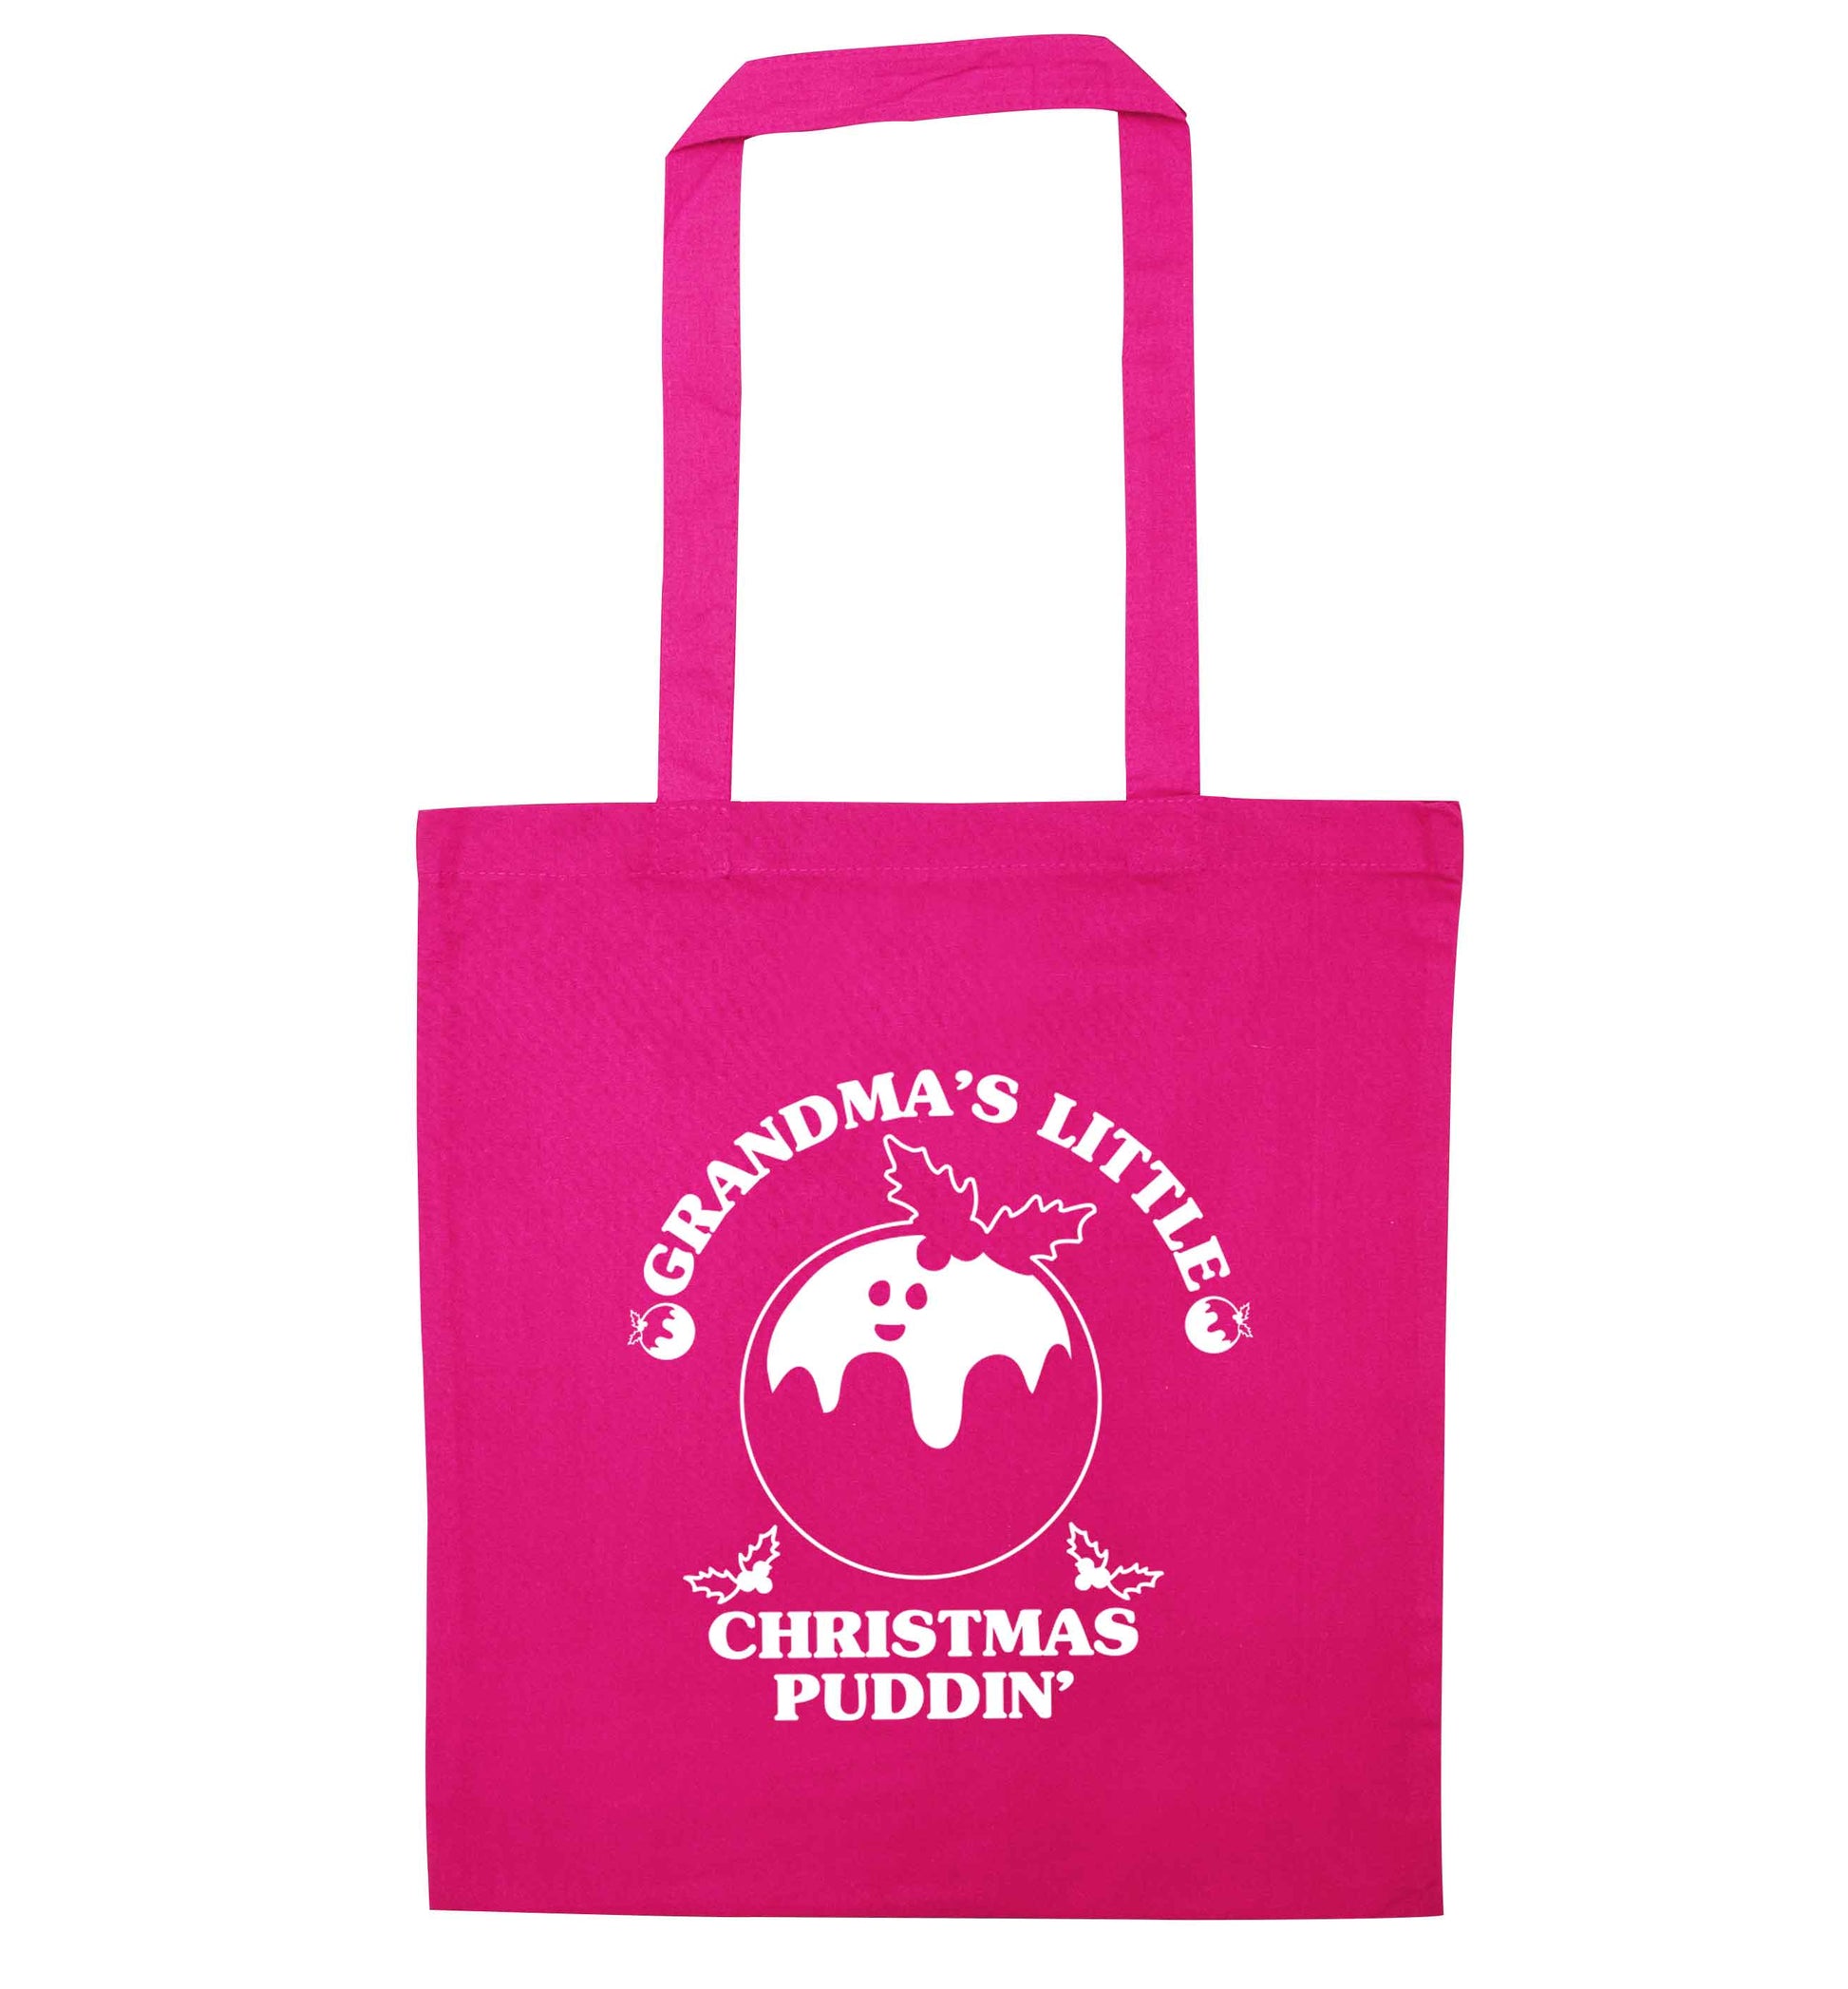 Grandma's little Christmas puddin' pink tote bag